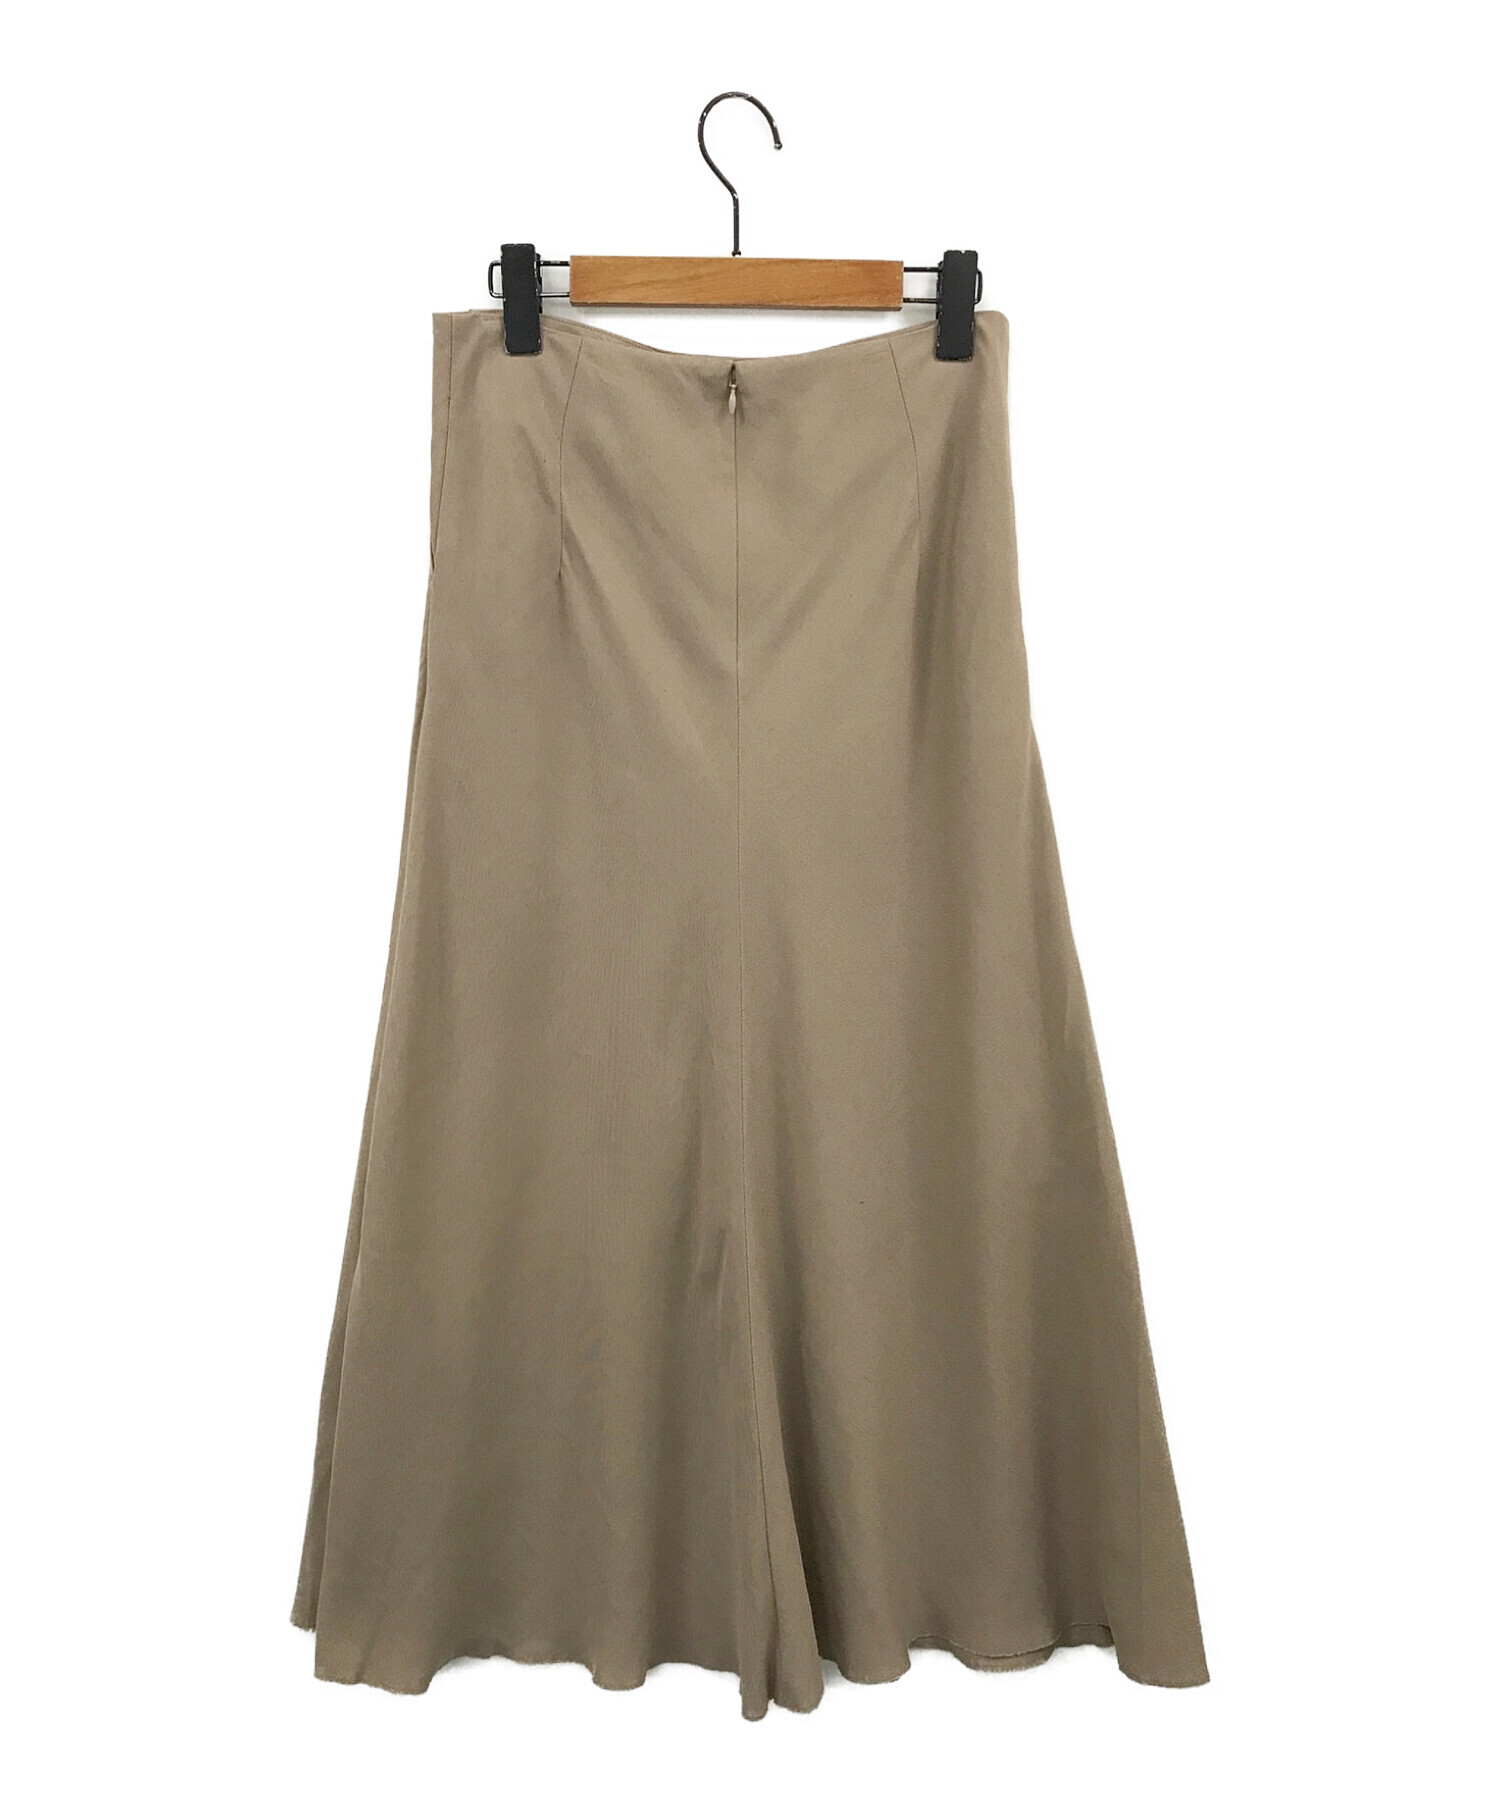 ドゥーズィエムクラスベージュスカートサイズ36 - ひざ丈スカート